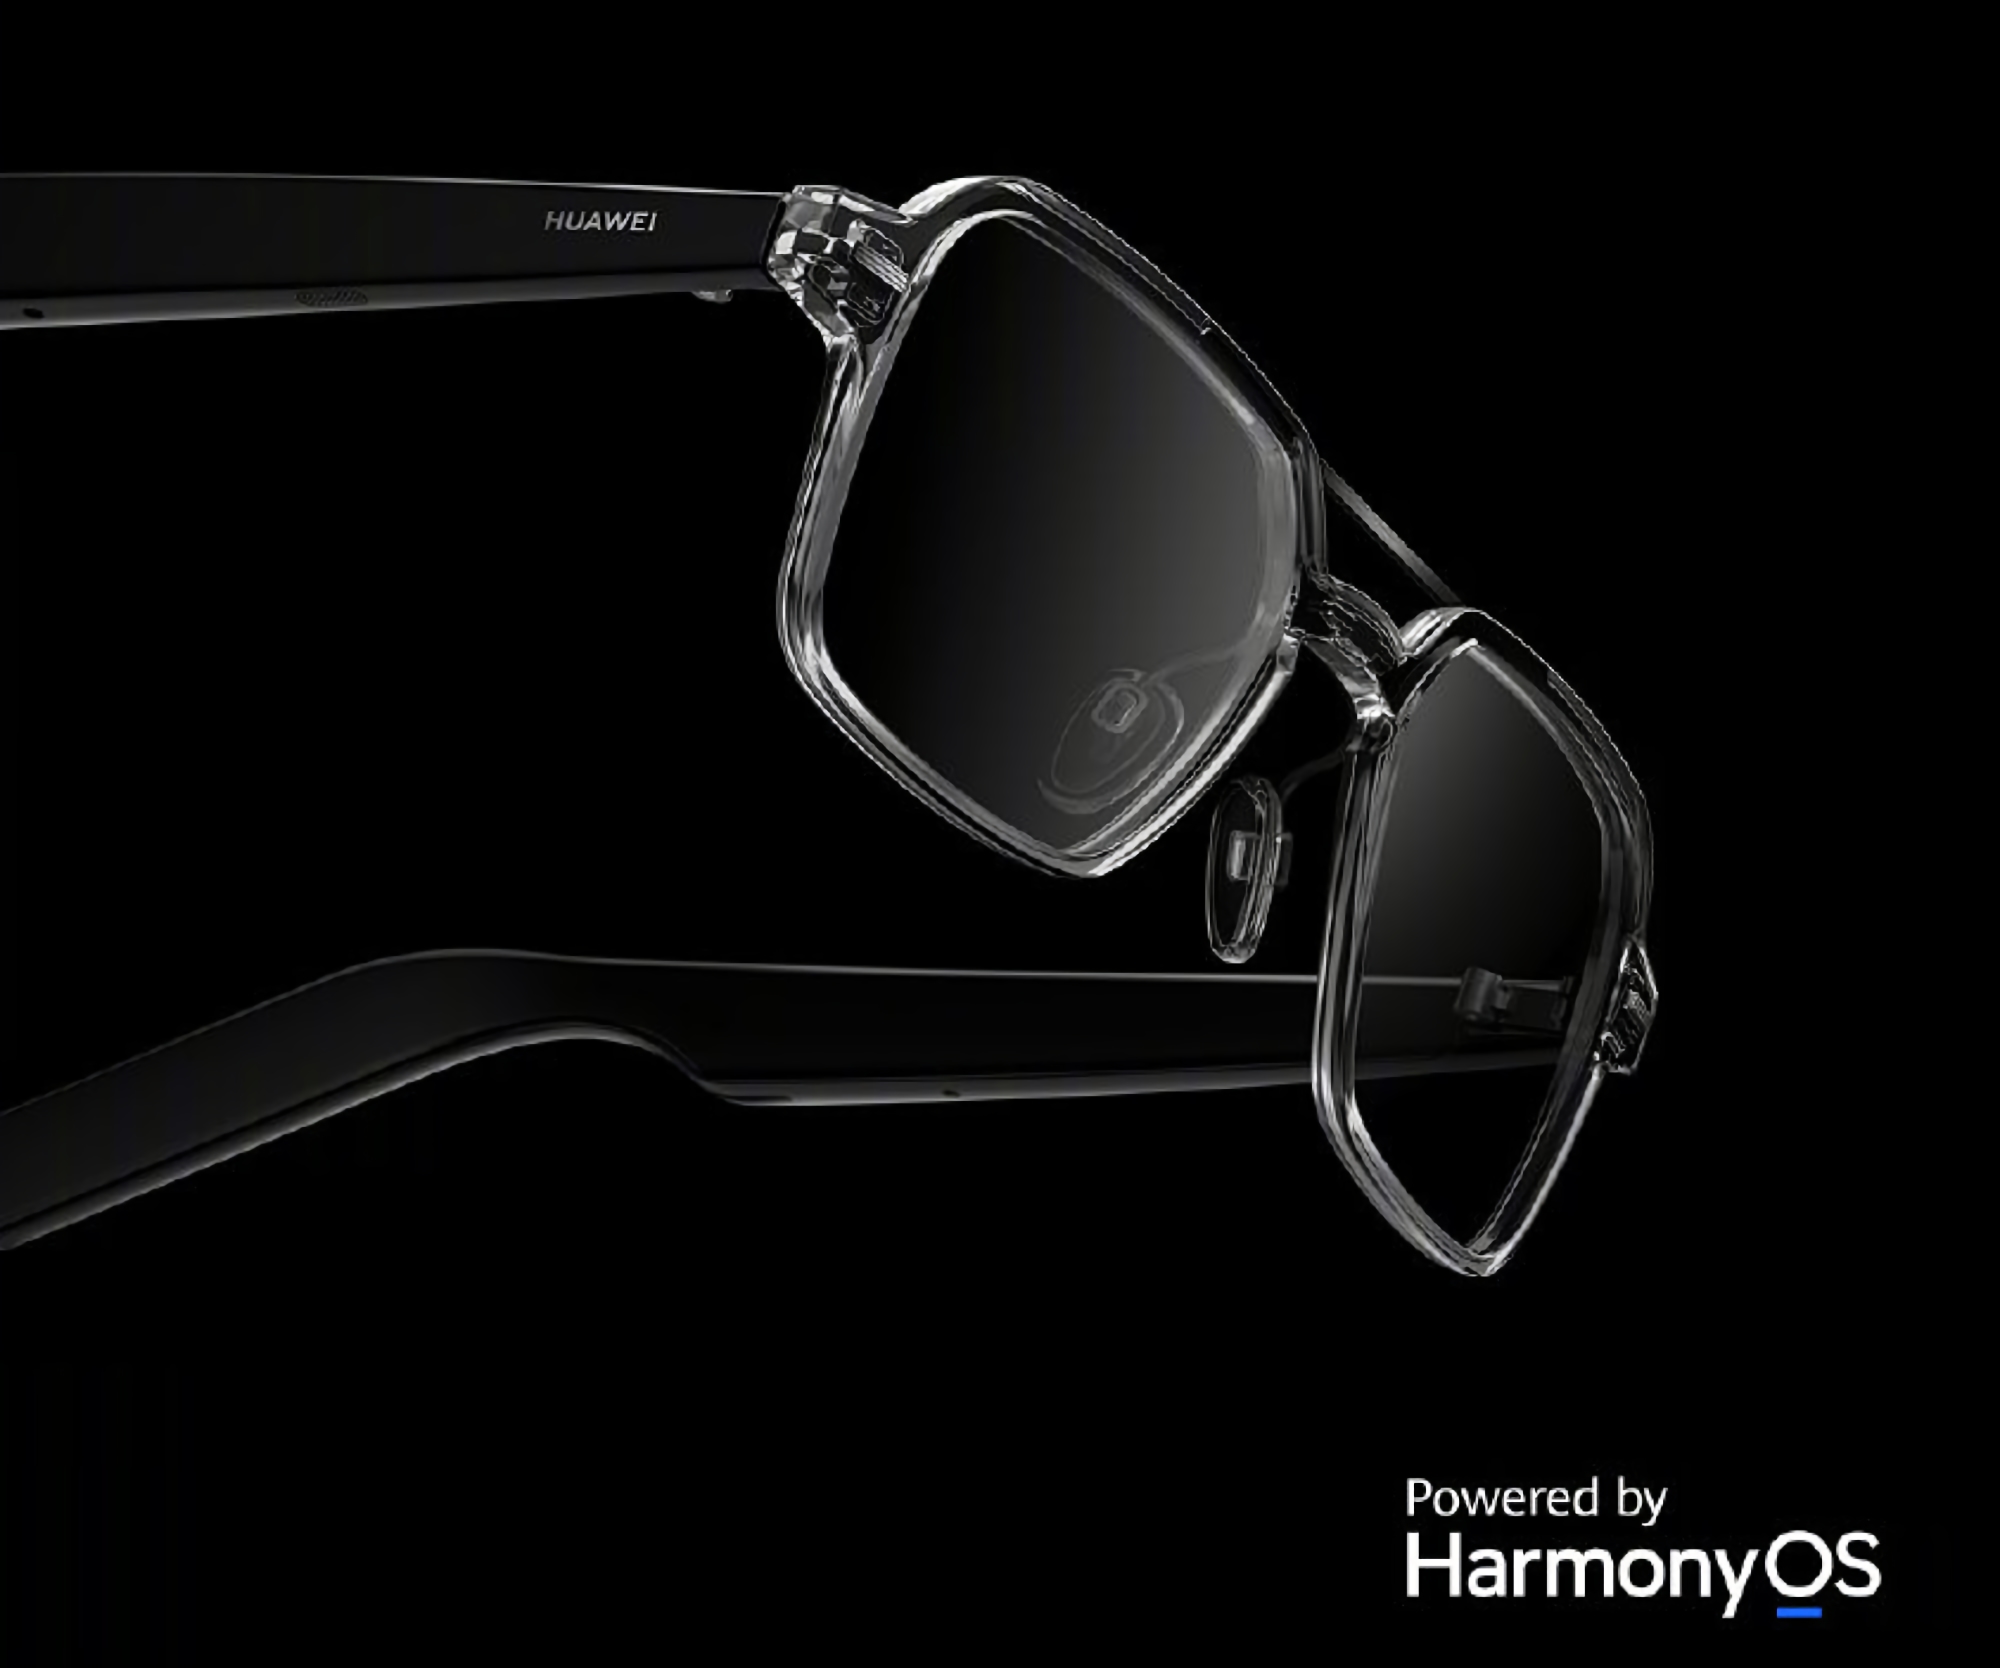 Huawei svela i nuovi occhiali smart con HarmonyOS a bordo, protezione IPX4, altoparlanti integrati e autonomia fino a 16 ore